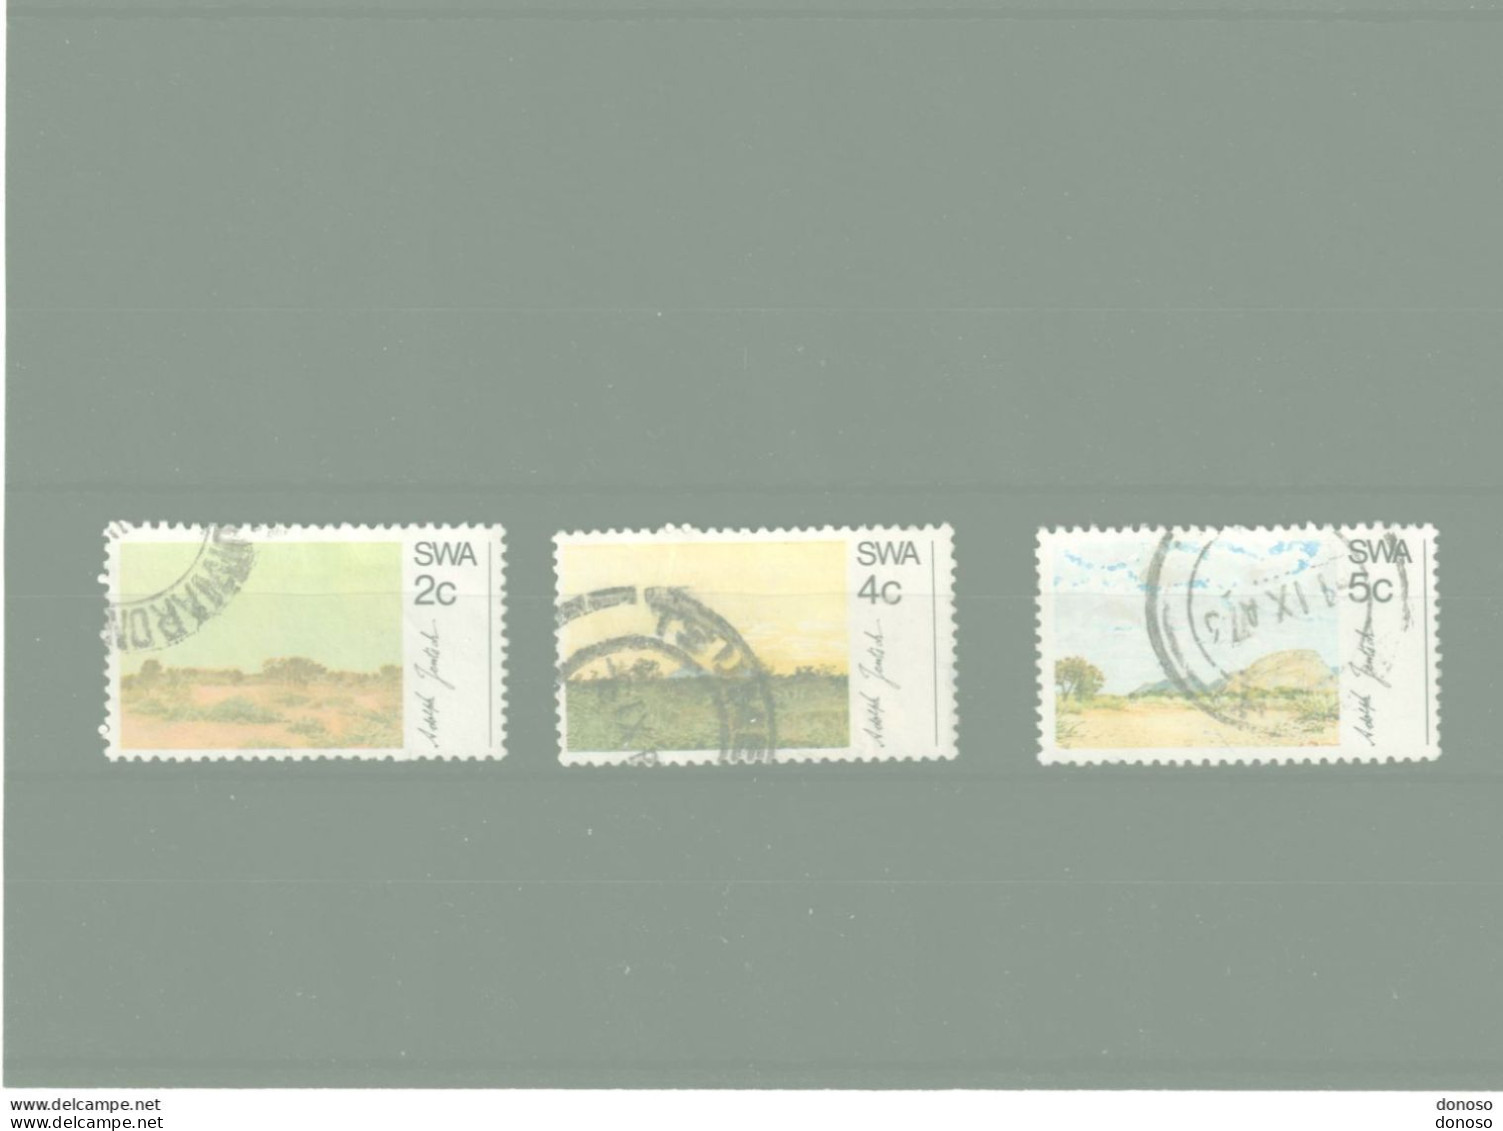 SWA SUD OUEST AFRICAIN 1973 Tableaux De Jentsch Yvert 313-315 Oblitéré Cote Yv 5 Euros - South West Africa (1923-1990)